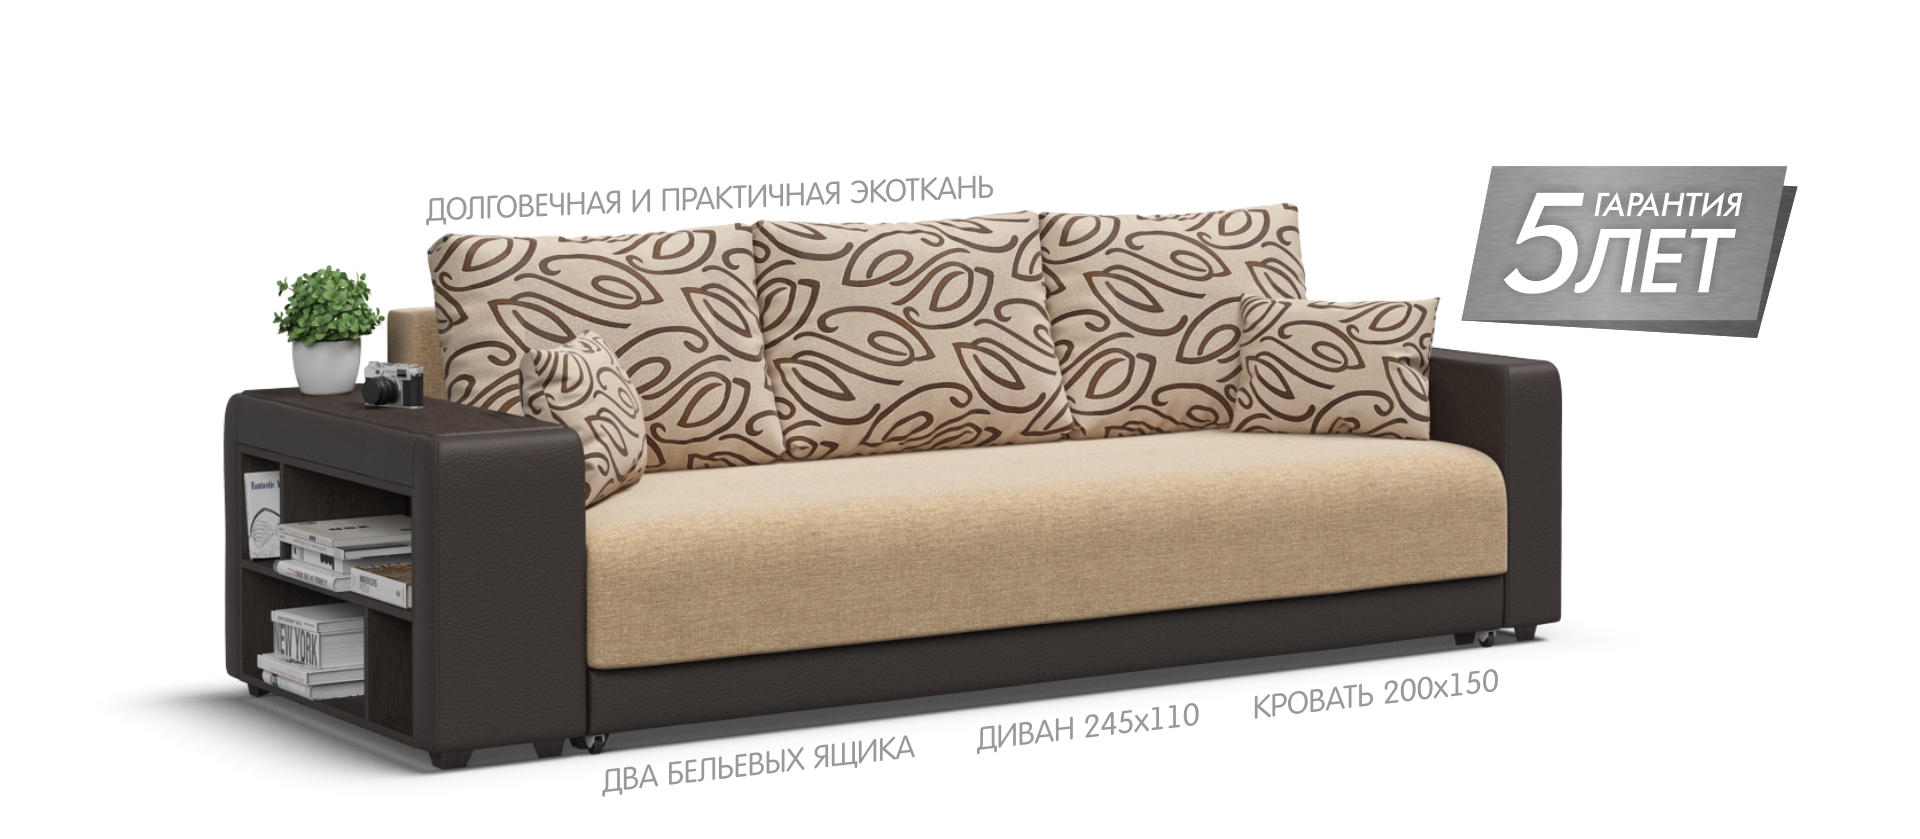 Магазин Много Мебели В Челябинске Каталог Цены